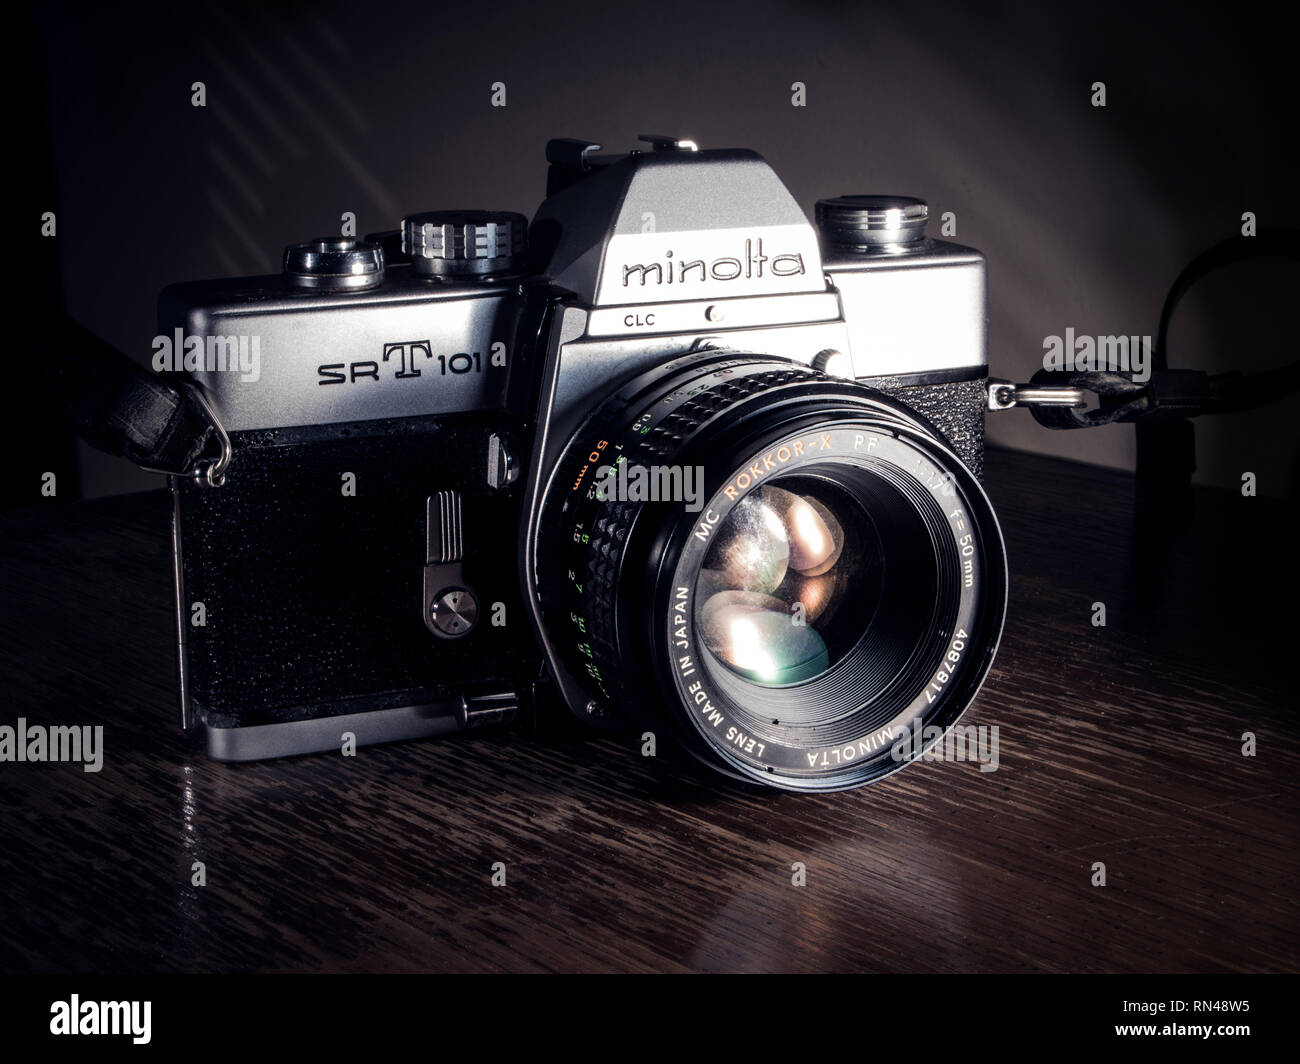 カメラ その他 Minolta lens hi-res stock photography and images - Alamy